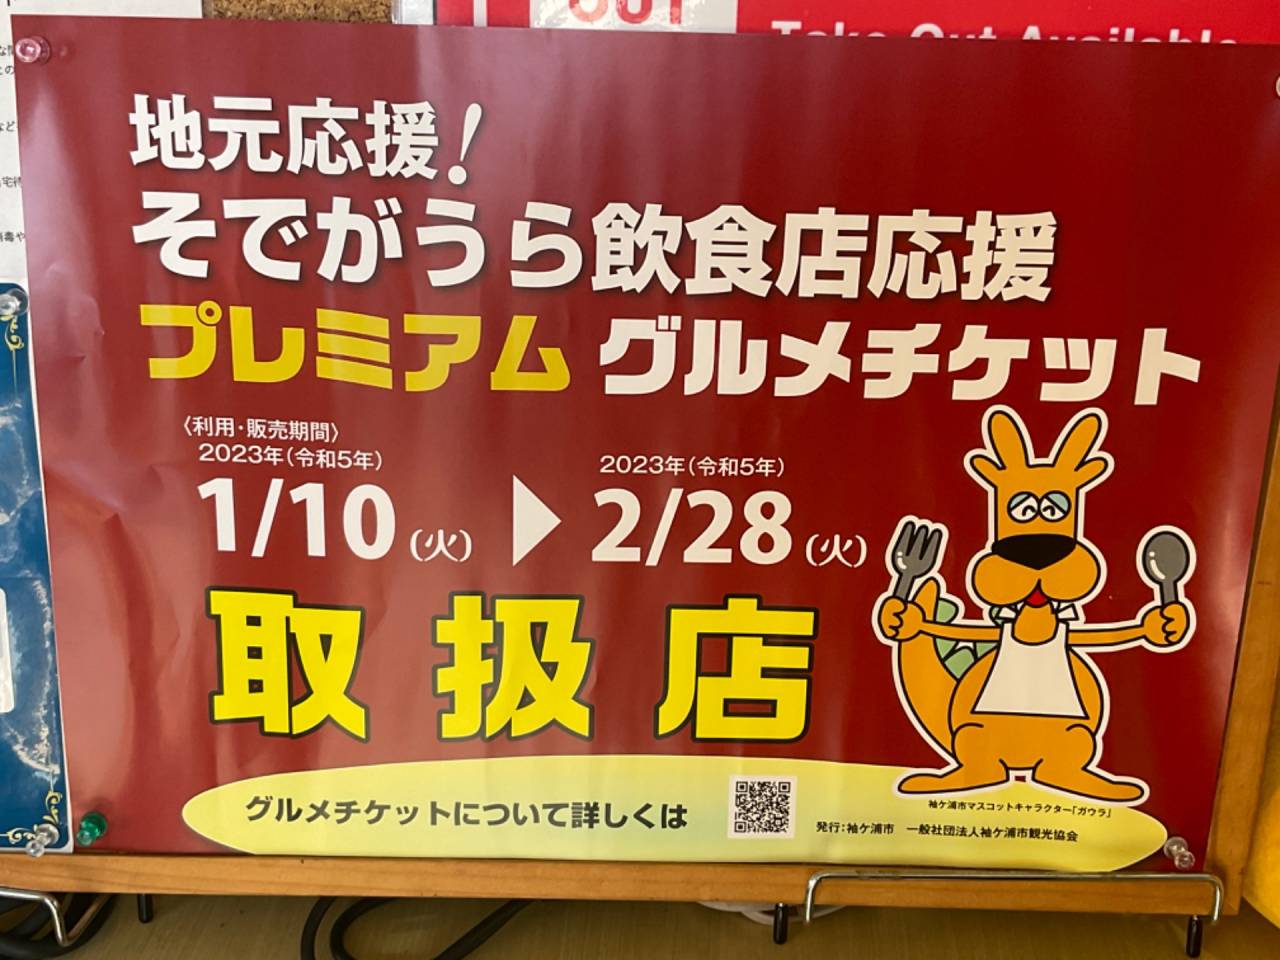 本日、1月28日(土)。営業致します。  千葉で食べようプレミアム食事券。(当店は、確認店用のブルーです)当店もご利用いただけます。